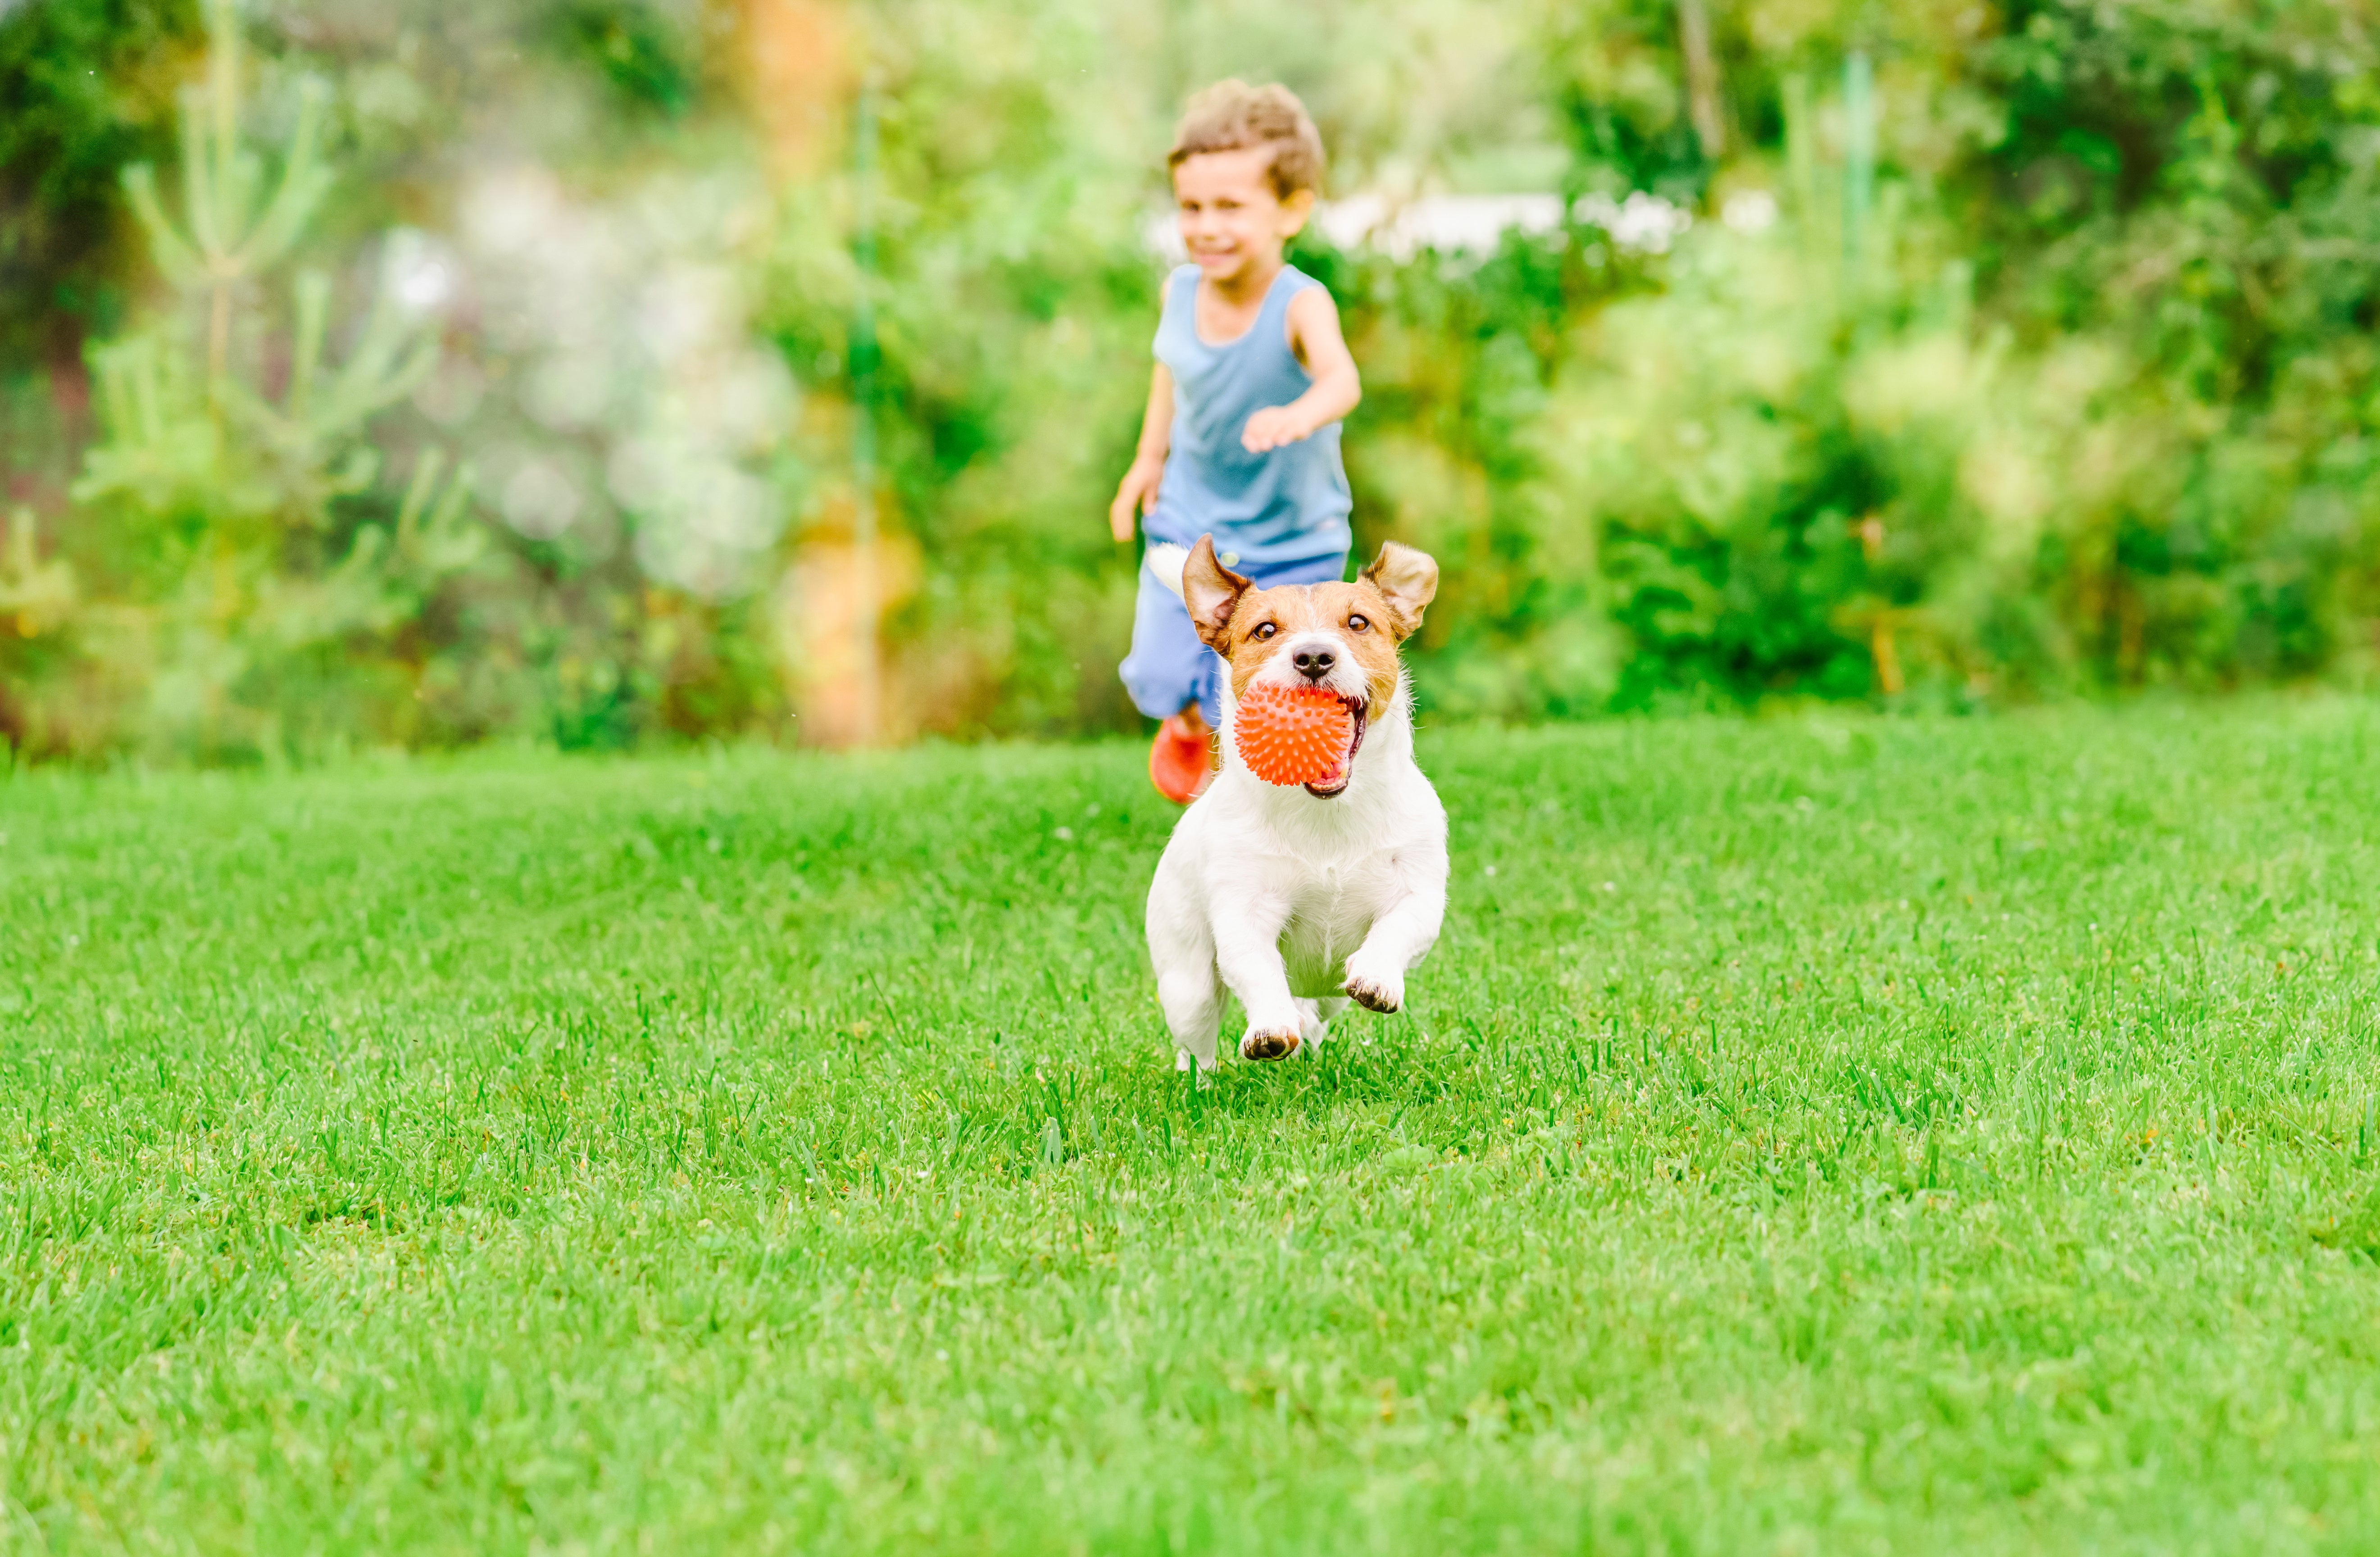 Rasenpflege ist mit Hunden sehr wichtig. Häufig urinieren Hunde auf dem Rasen und somit kannst du dich vor gelben Flecken schützen.